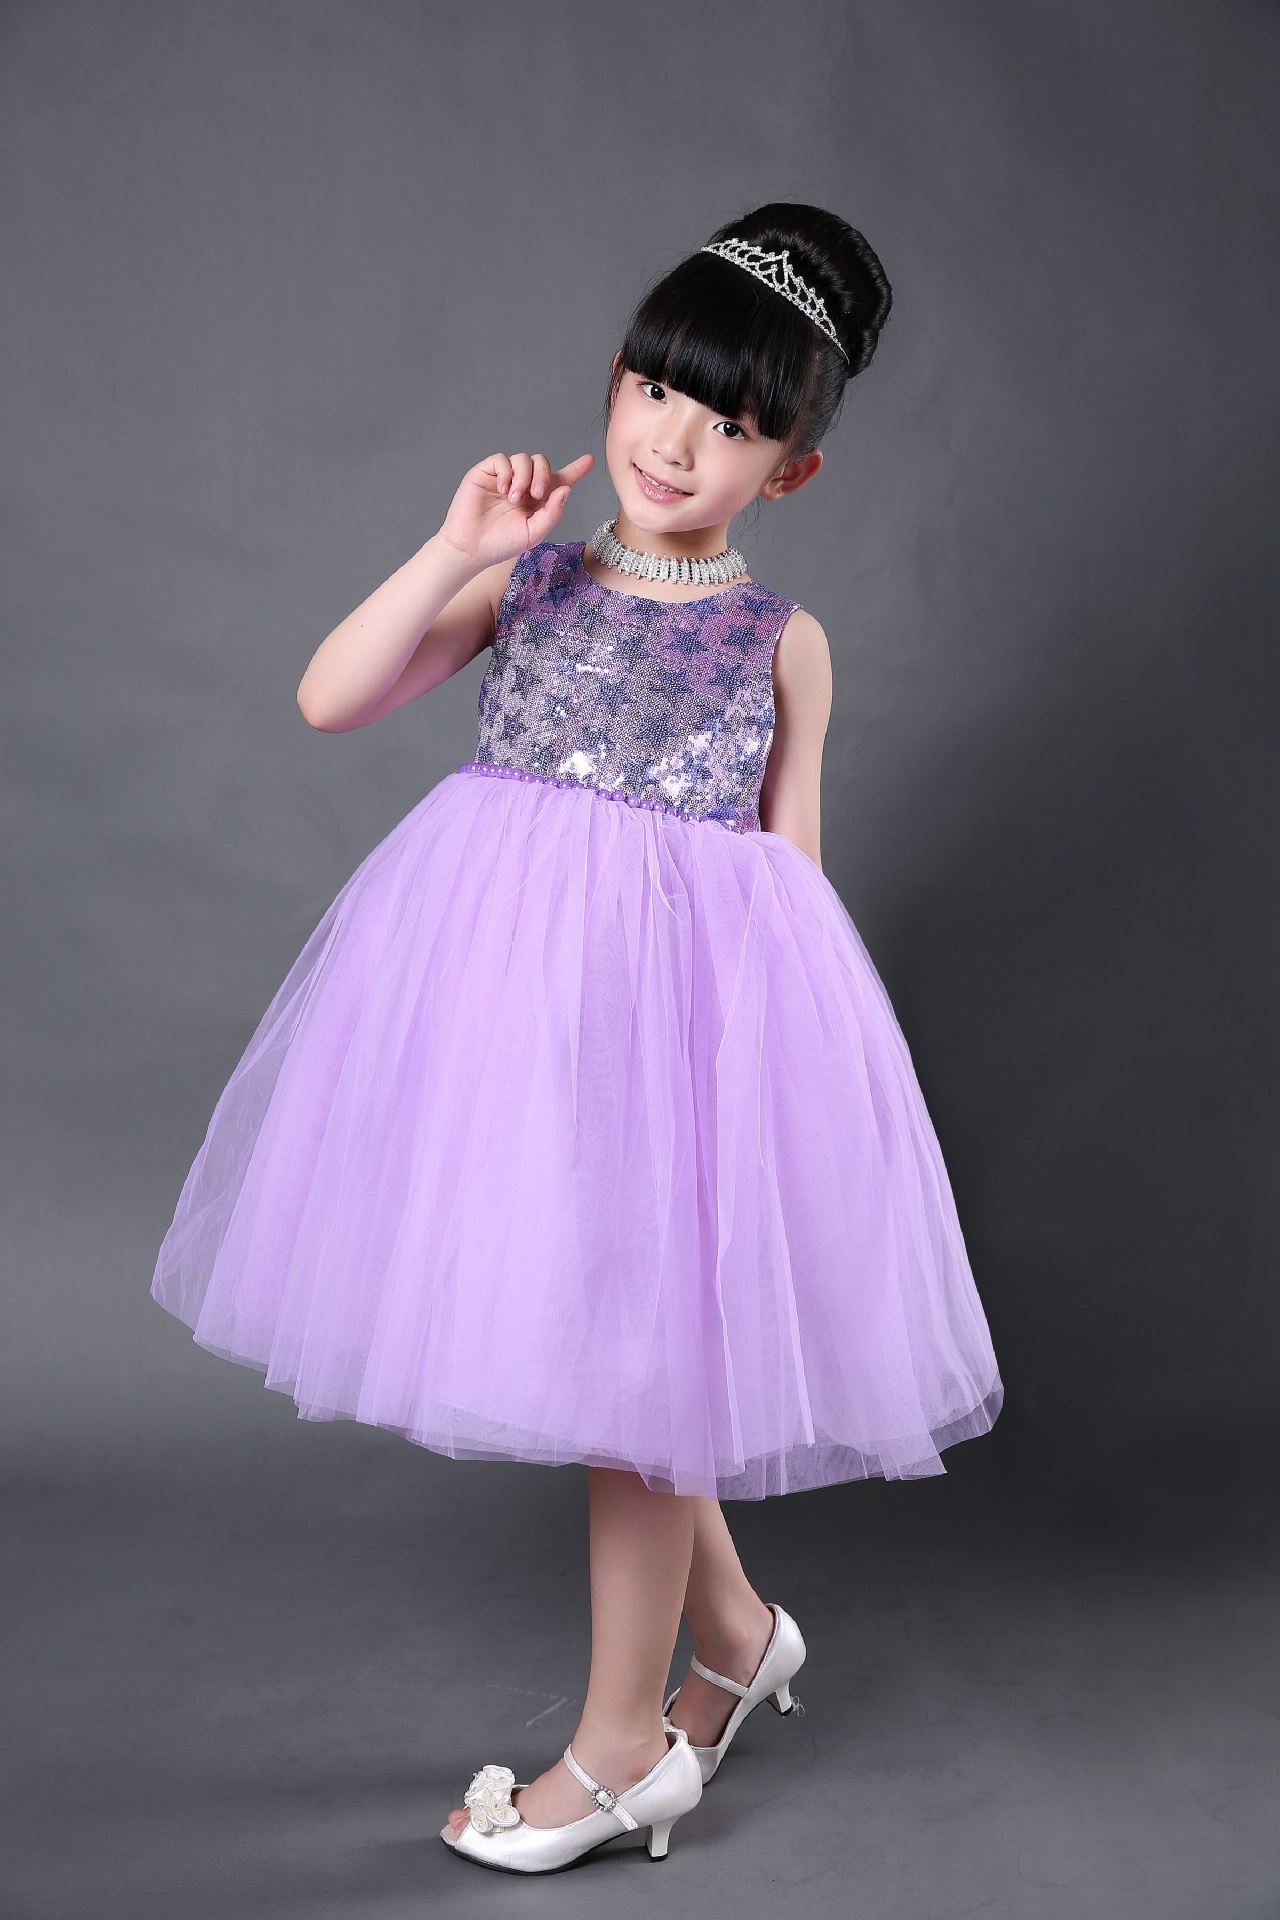 儿童公主裙 女童礼服裙 纱裙 紫色舞台大童2015新款 一件代发